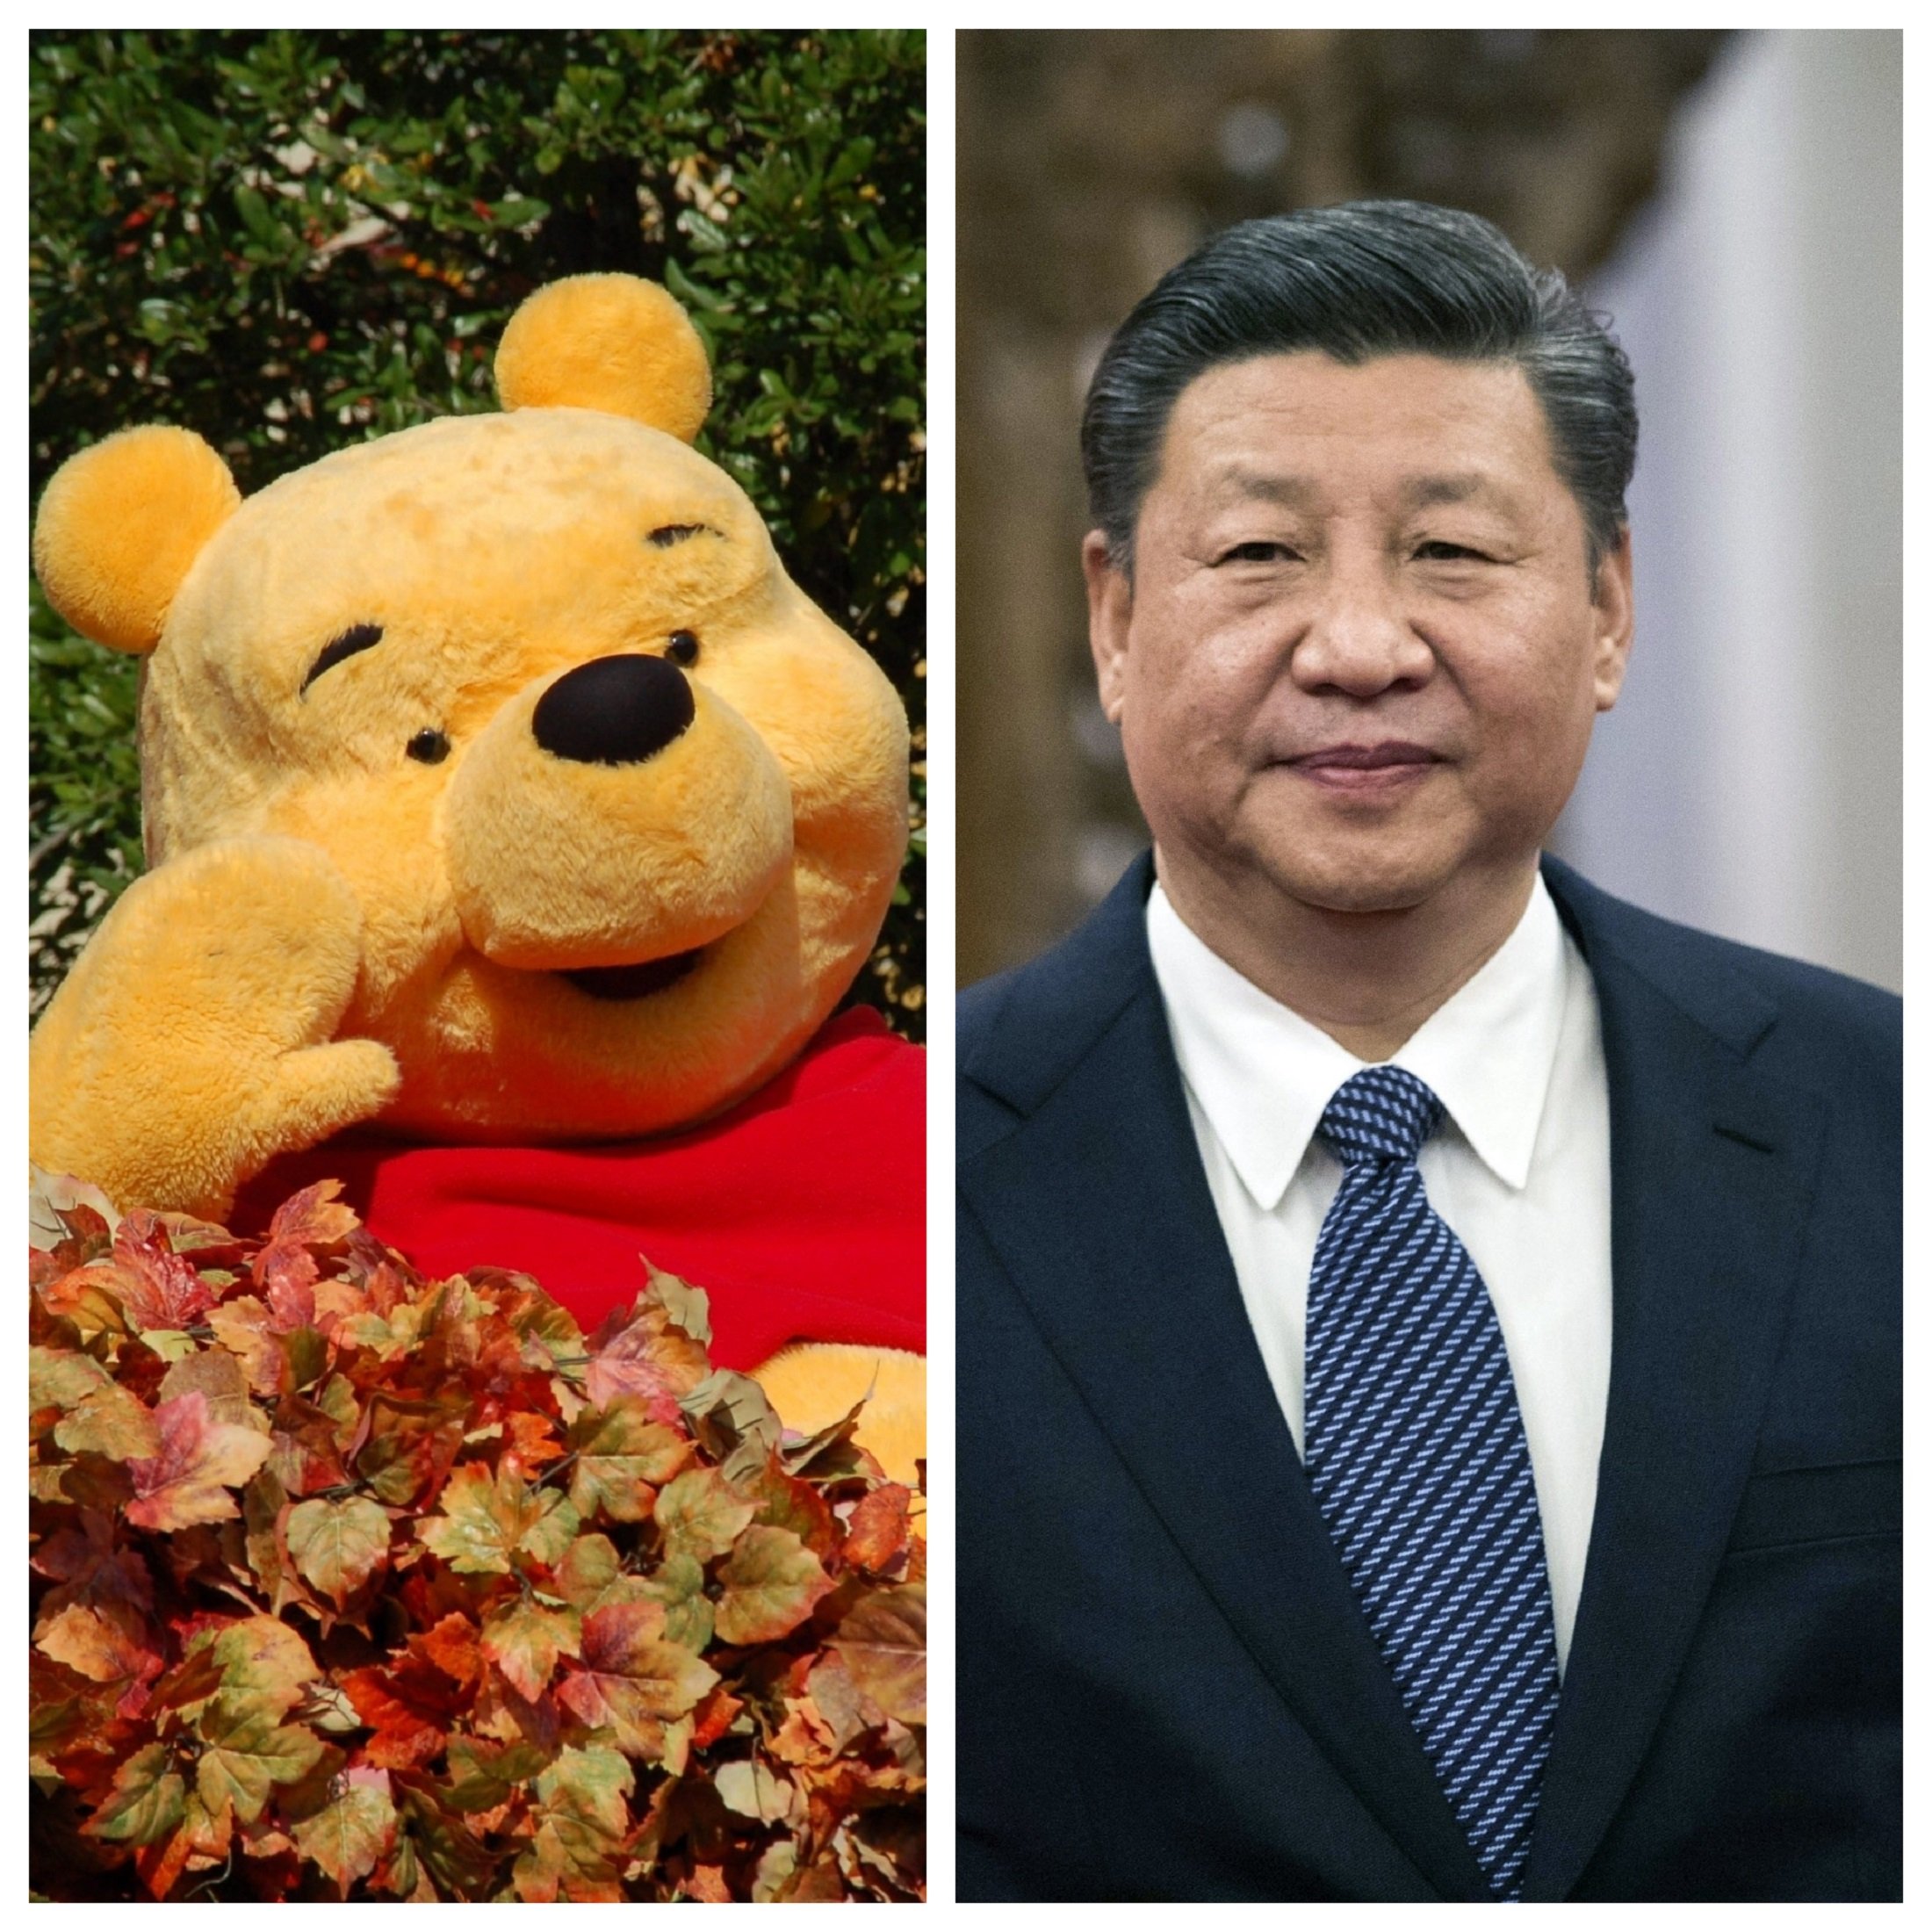 La Xina censura Winnie the Pooh després de comparacions amb el president Xi Jinping